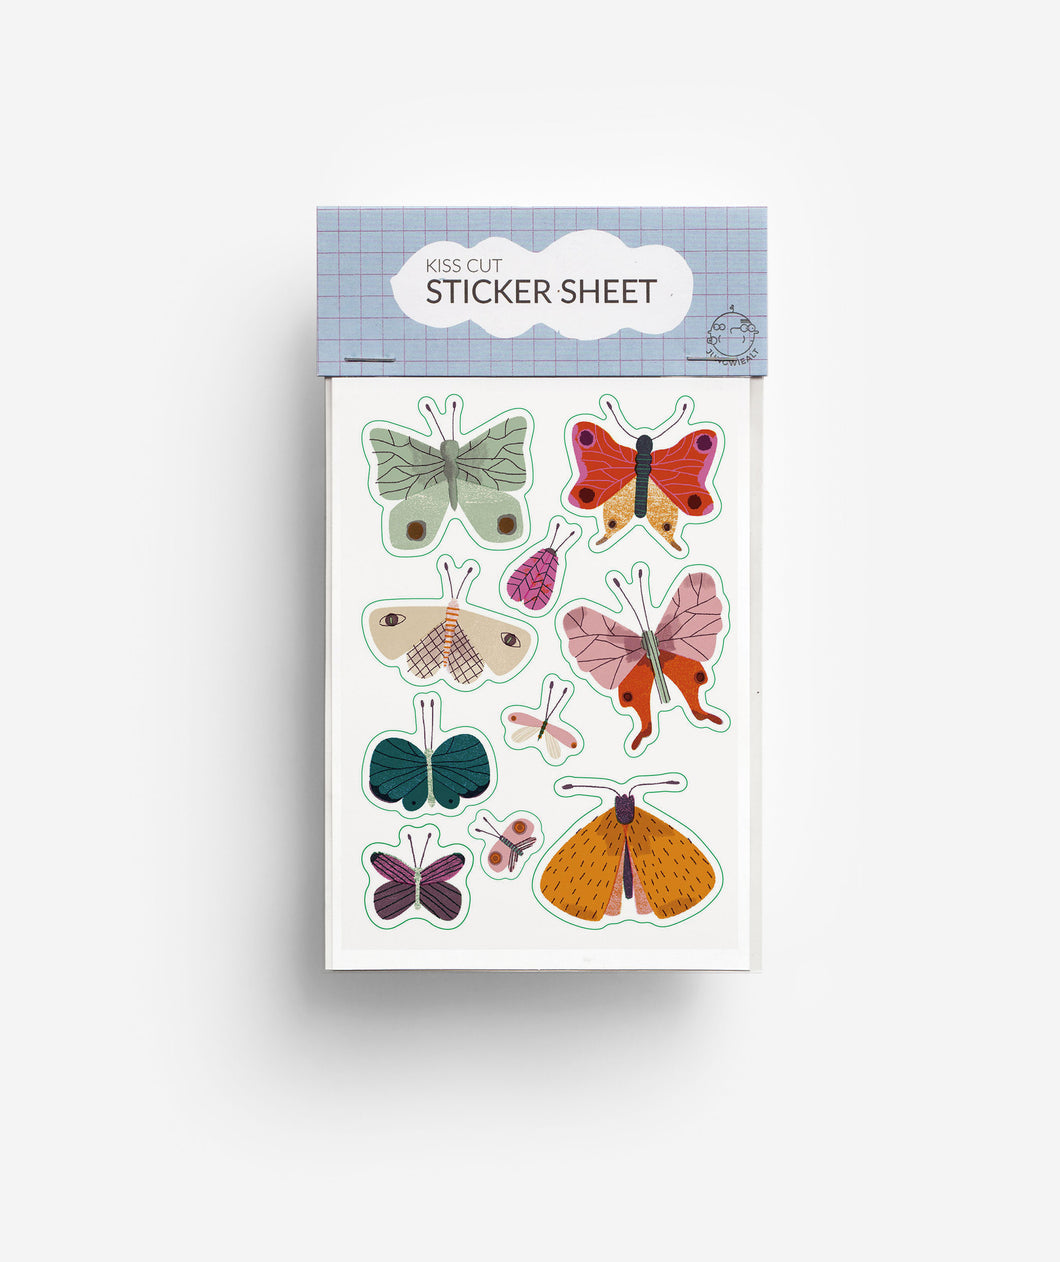 Butterfly Kiss Cut Sticker Sheet jungwiealt